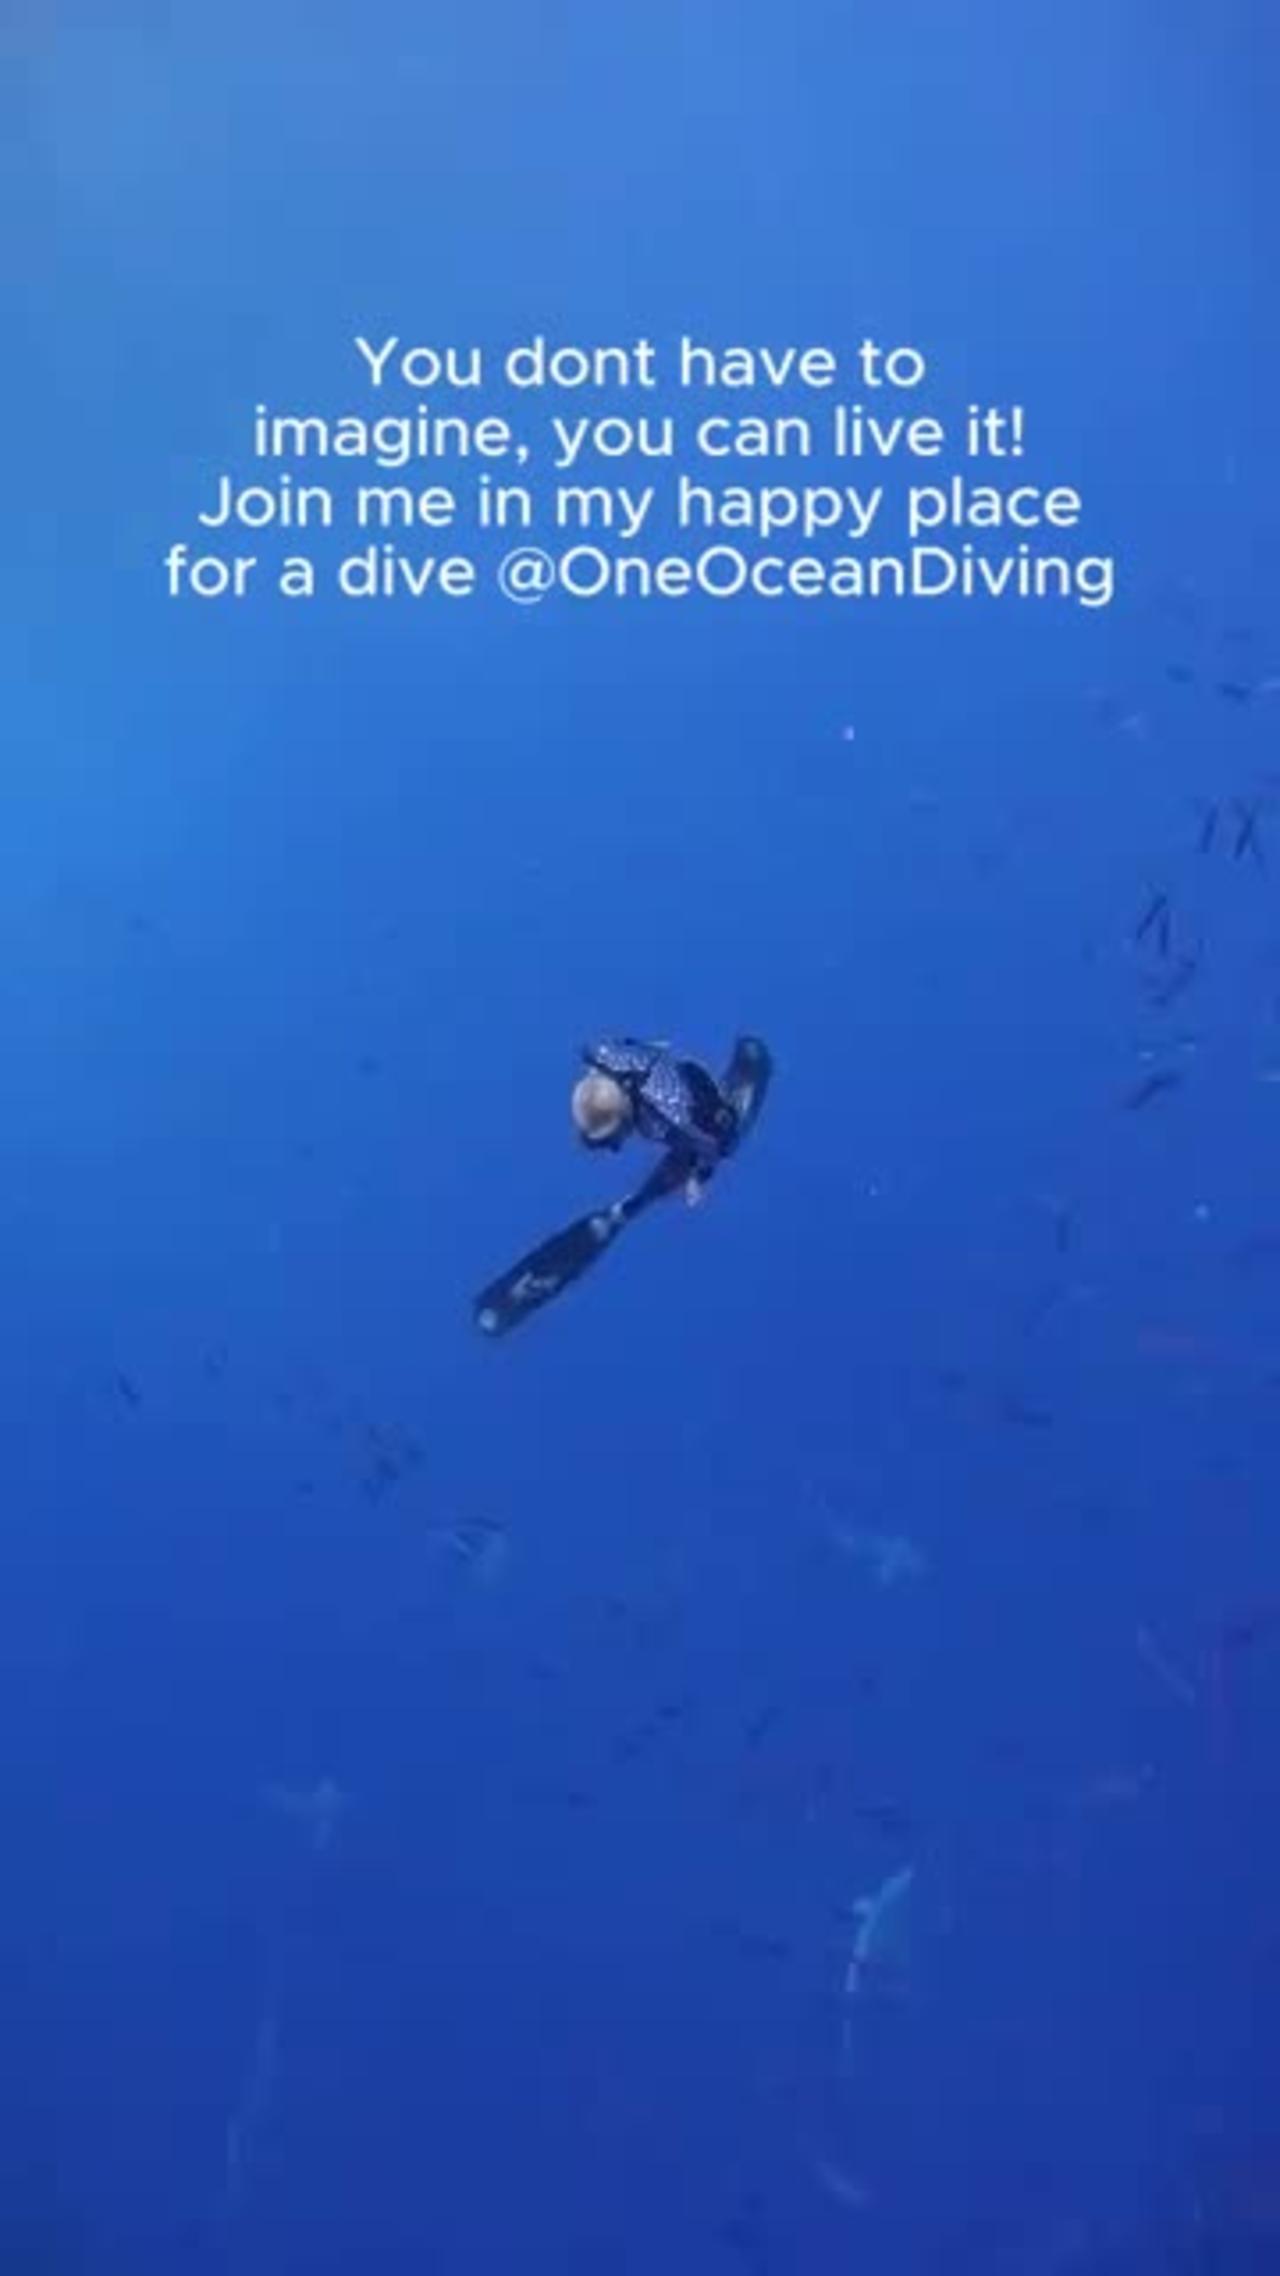 Dancing in the deep ocean 💙